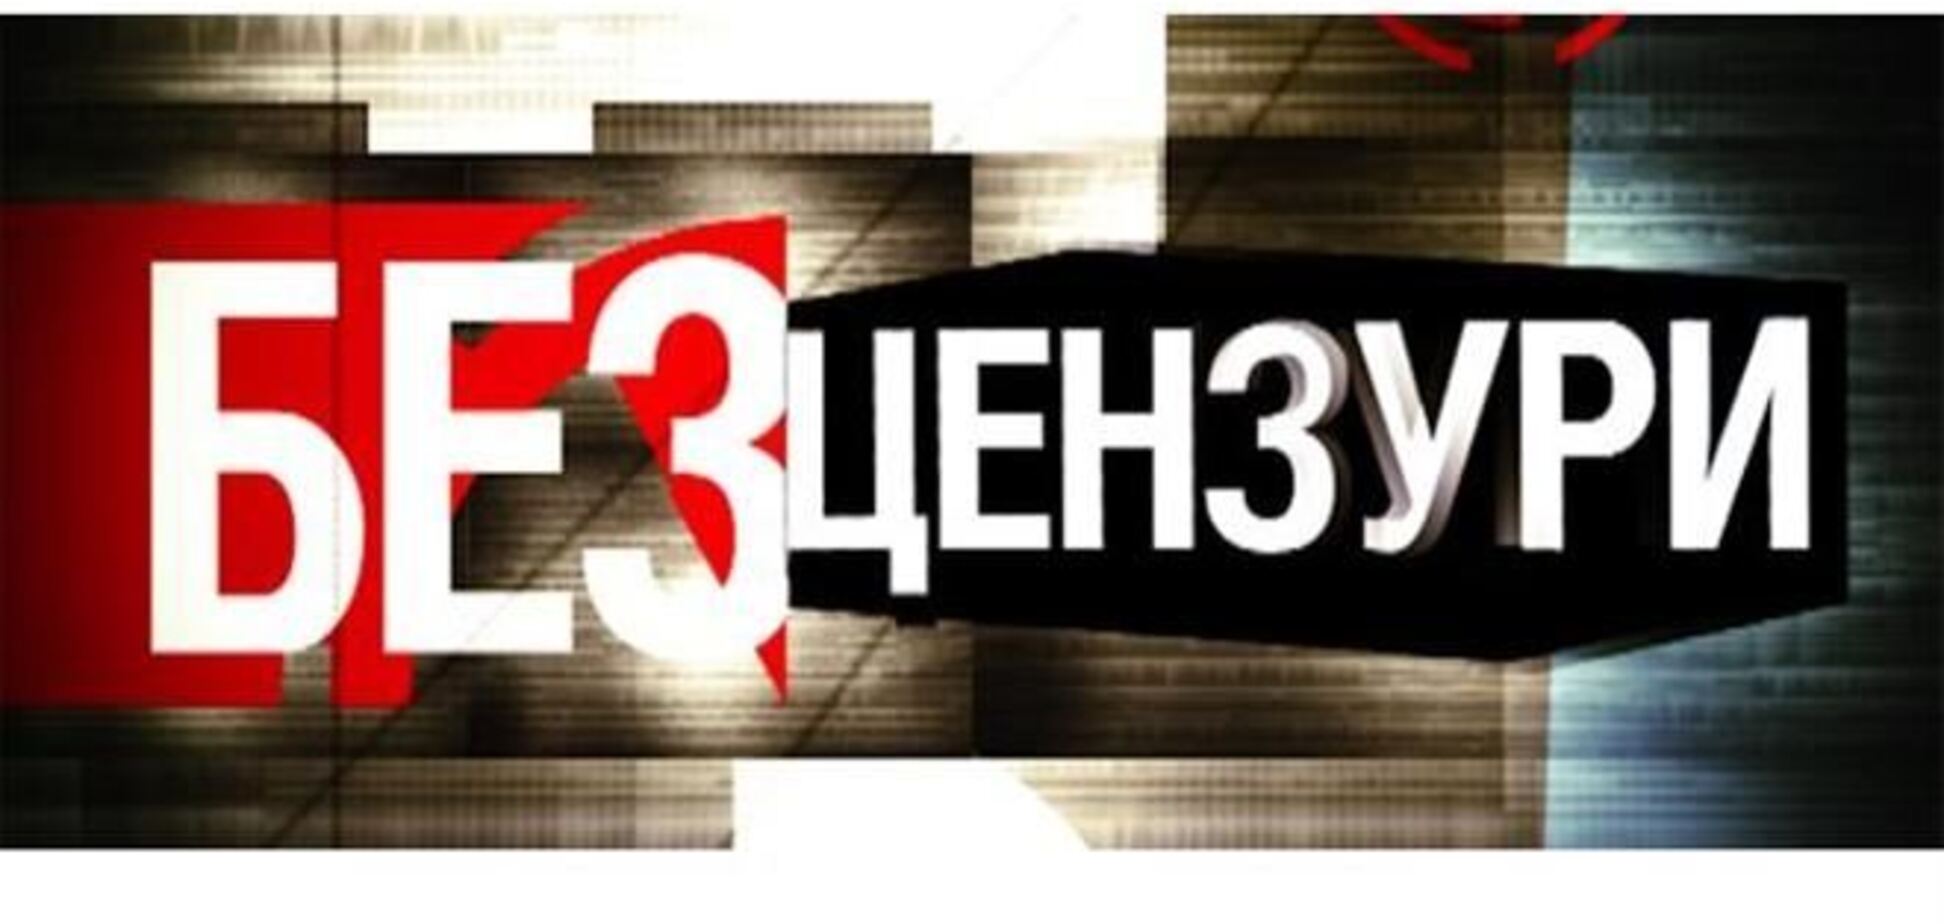 'Украинская правда' ввела цензуру на критику оппозиции даже в рекламе